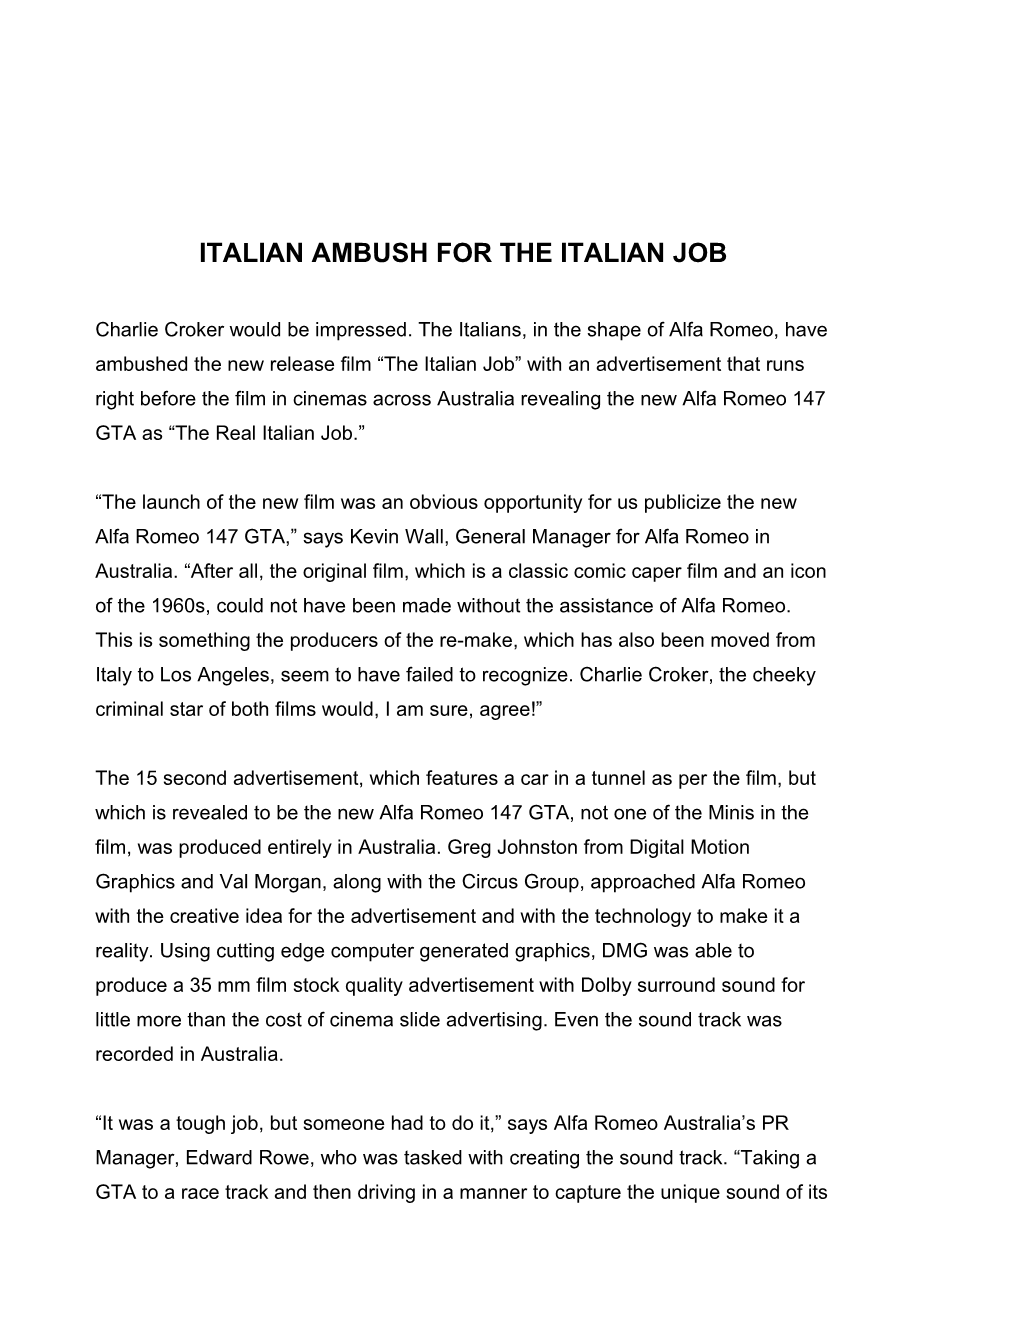 Italian Ambush for the Italian Job